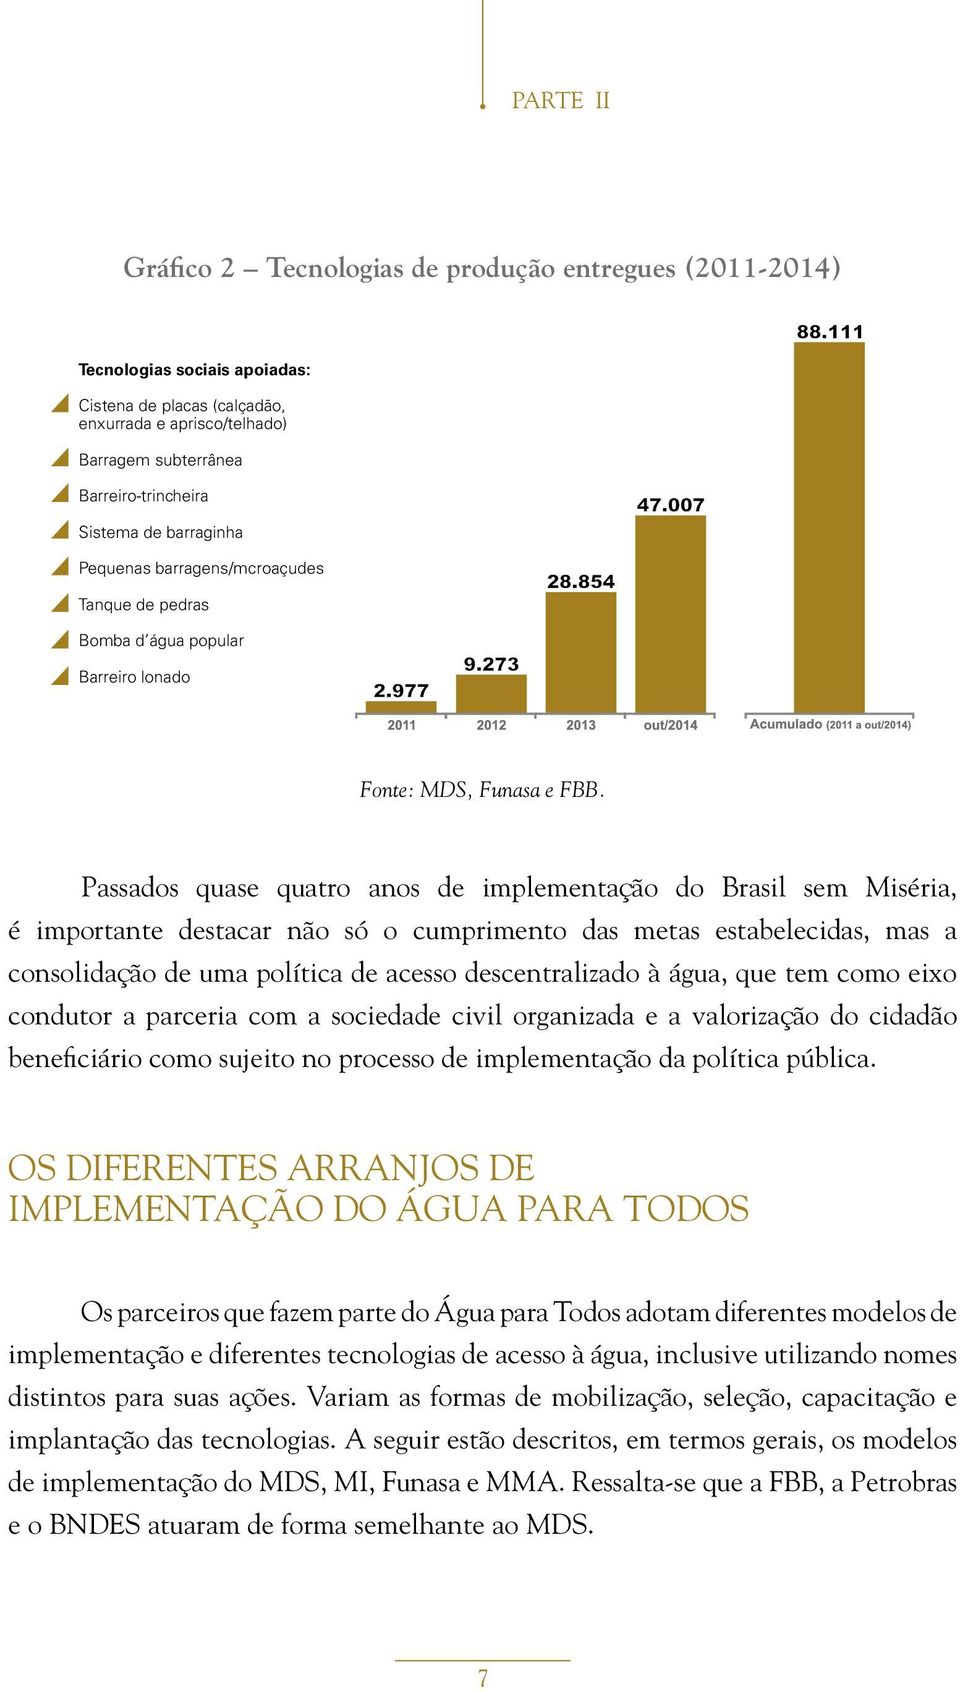 Passados quase quatro anos de implementação do Brasil sem Miséria, é importante destacar não só o cumprimento das metas estabelecidas, mas a consolidação de uma política de acesso descentralizado à